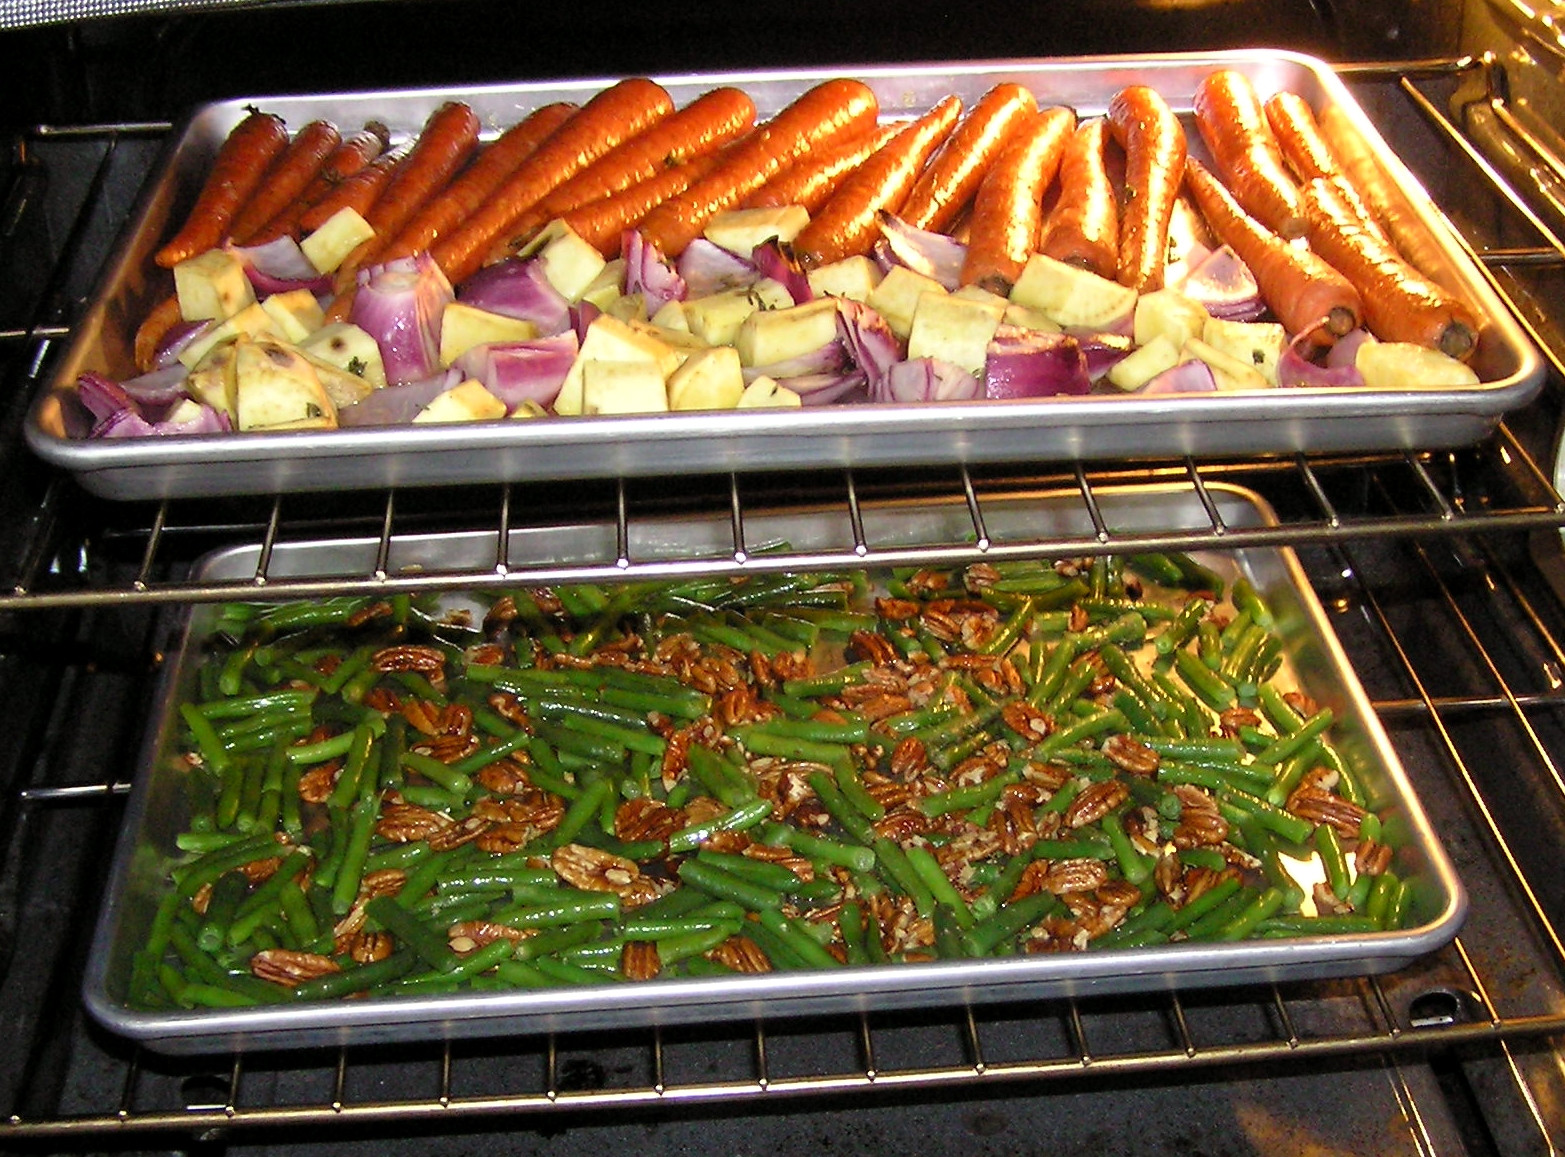 Vegetarian Easter Brunch Recipes
 Ve arian Easter dinner